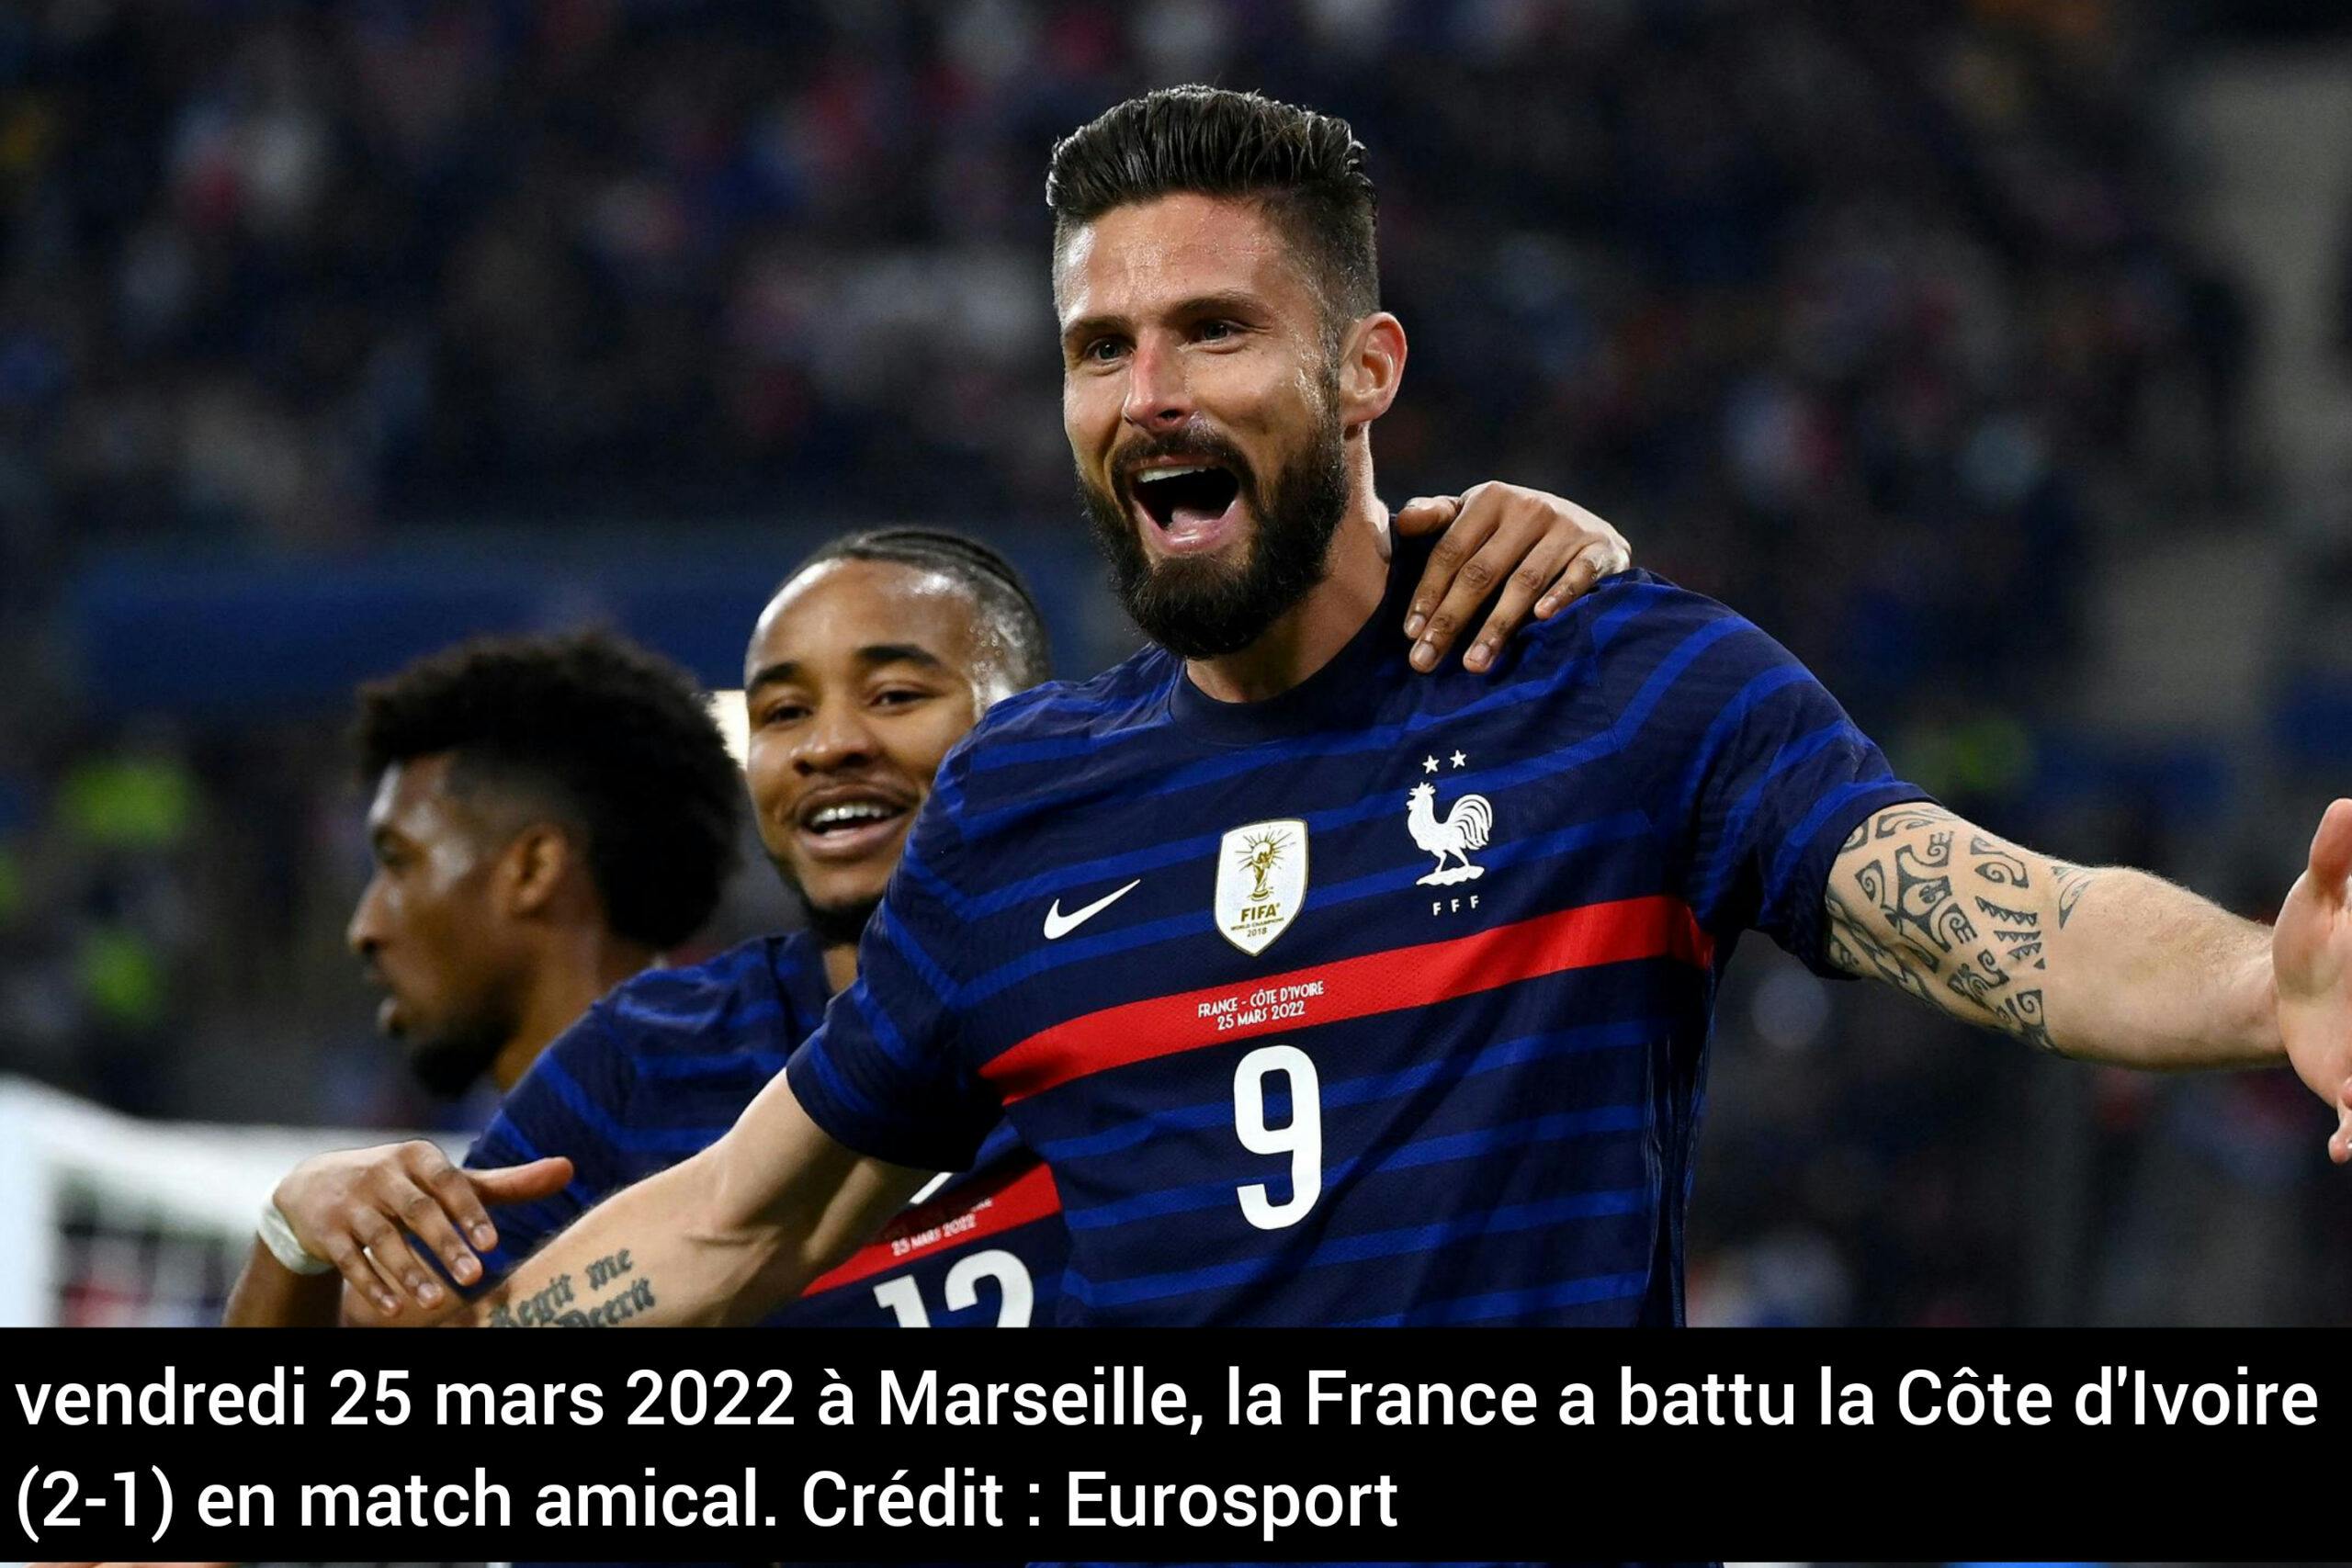 Match amical international : La France prend le meilleur sur la Côte d’Ivoire pour la deuxième fois